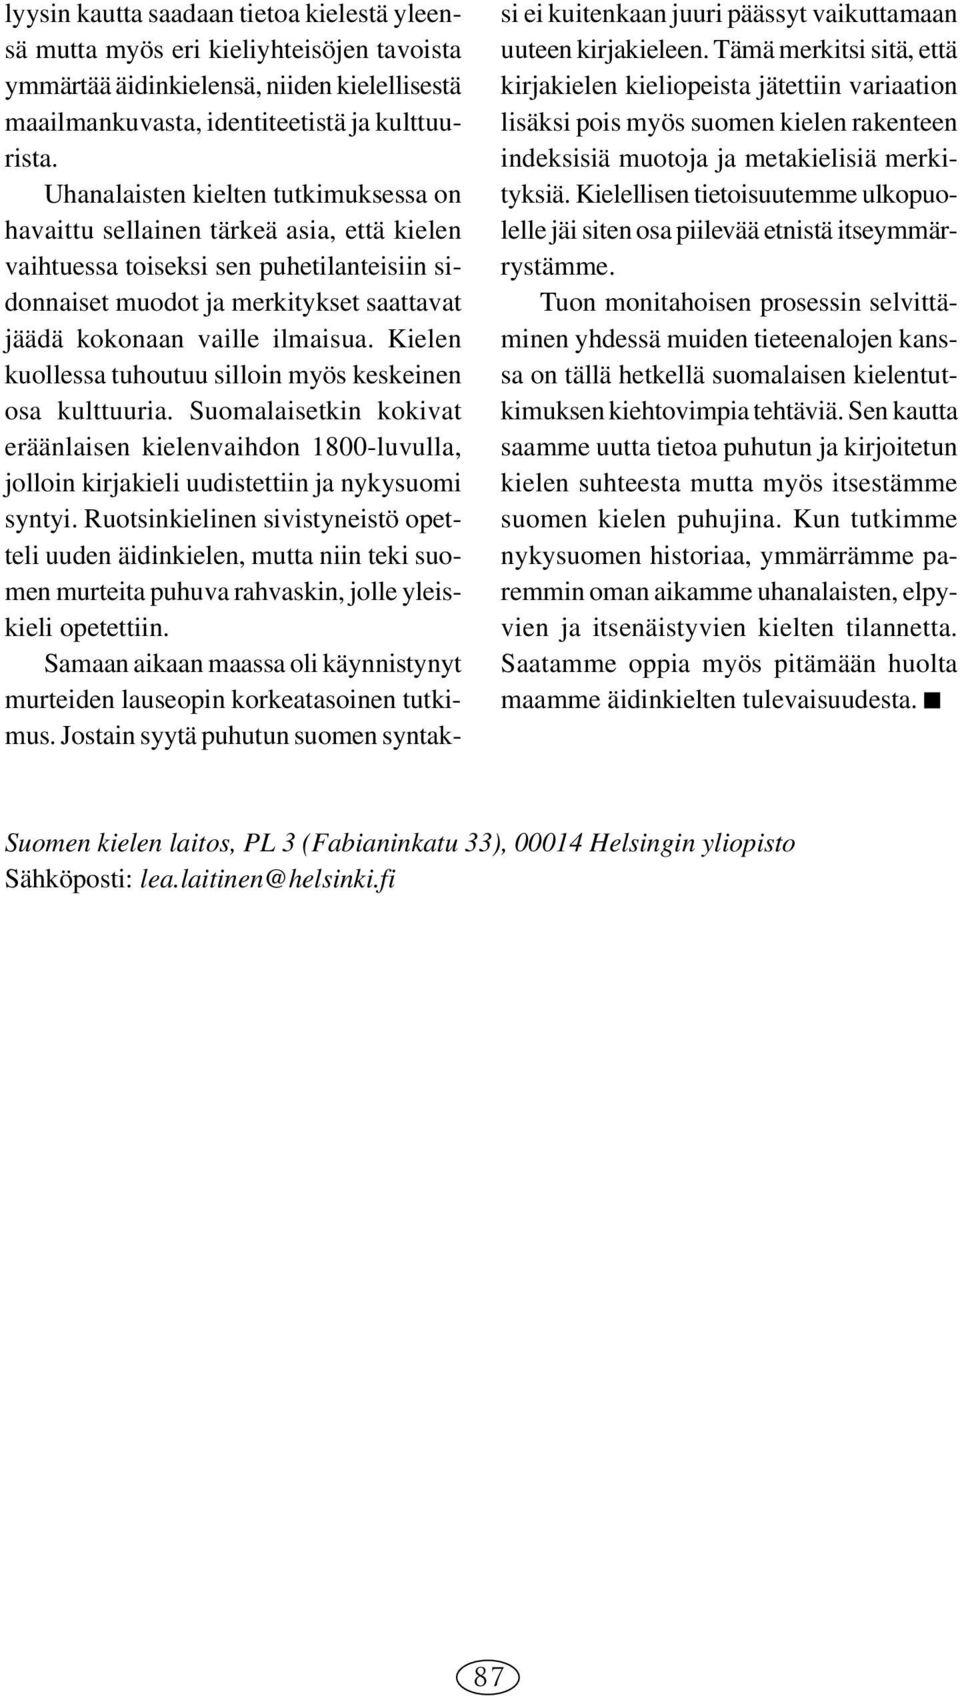 Kielen kuollessa tuhoutuu silloin myös keskeinen osa kulttuuria. Suomalaisetkin kokivat eräänlaisen kielenvaihdon 1800-luvulla, jolloin kirjakieli uudistettiin ja nykysuomi syntyi.